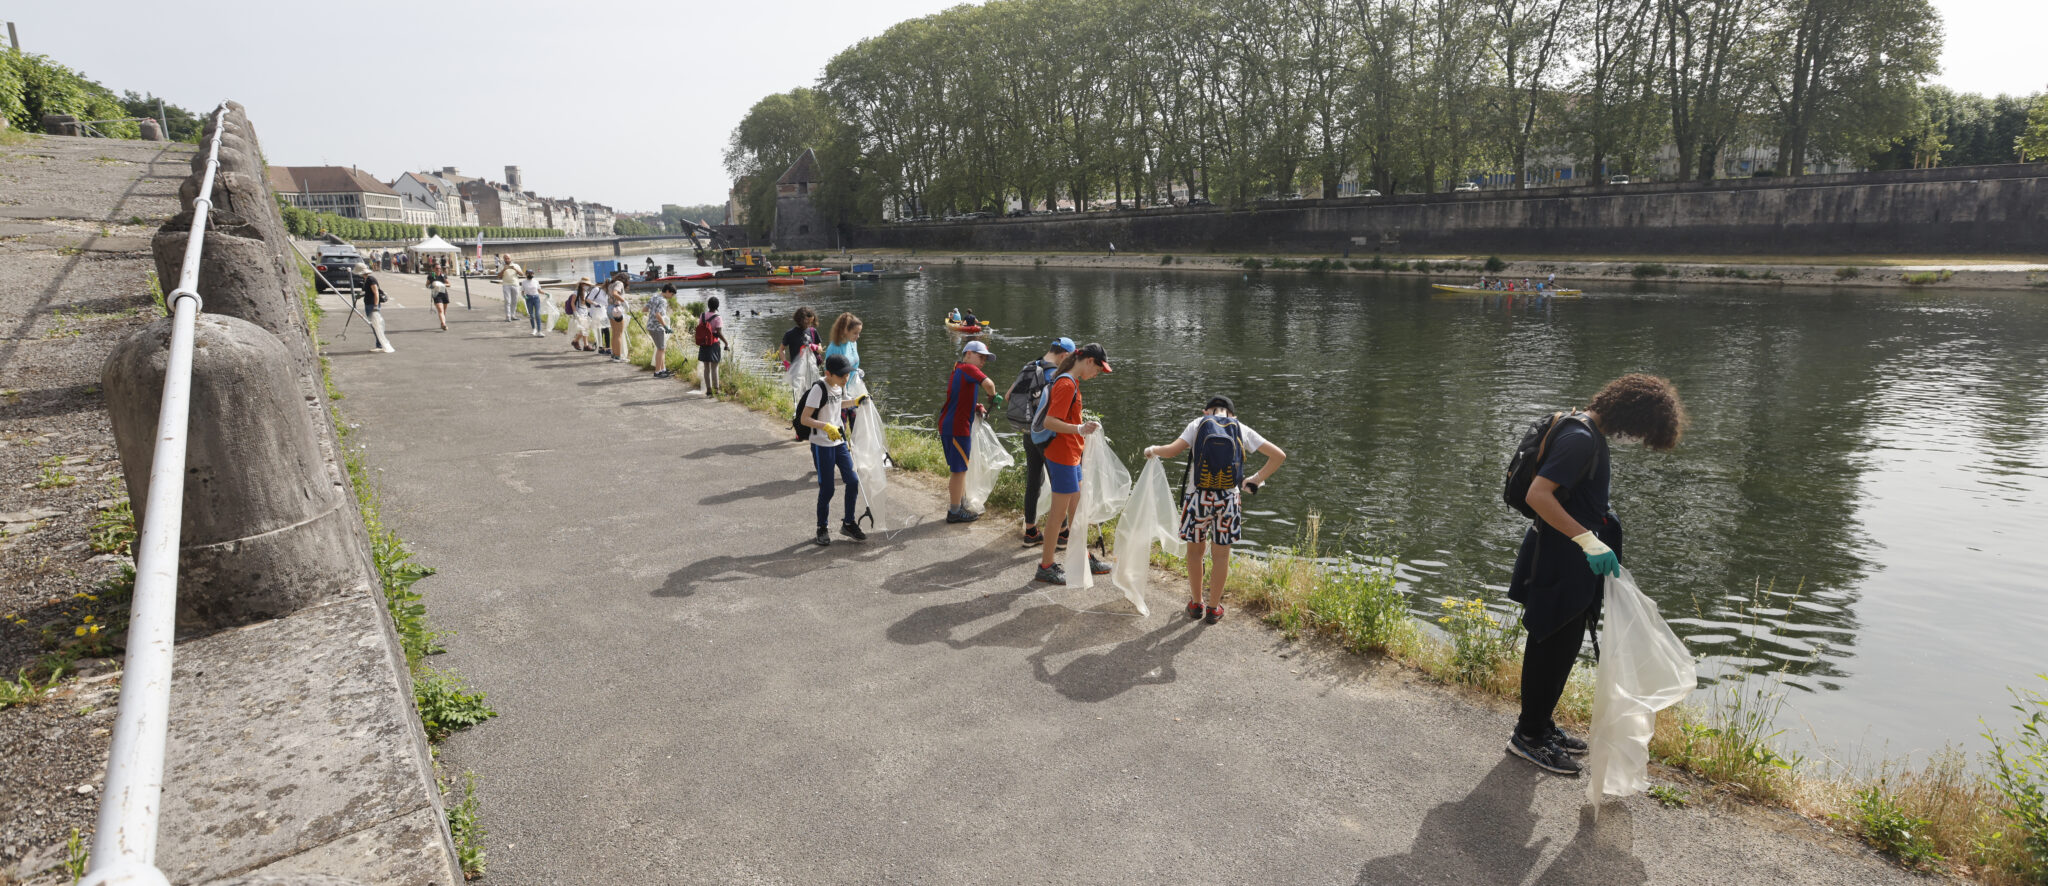 ©Jean-Charles Sexe - Opération de ramassage des déchets sur les rives du Doubs, au centre de Besançon, en juin 2021